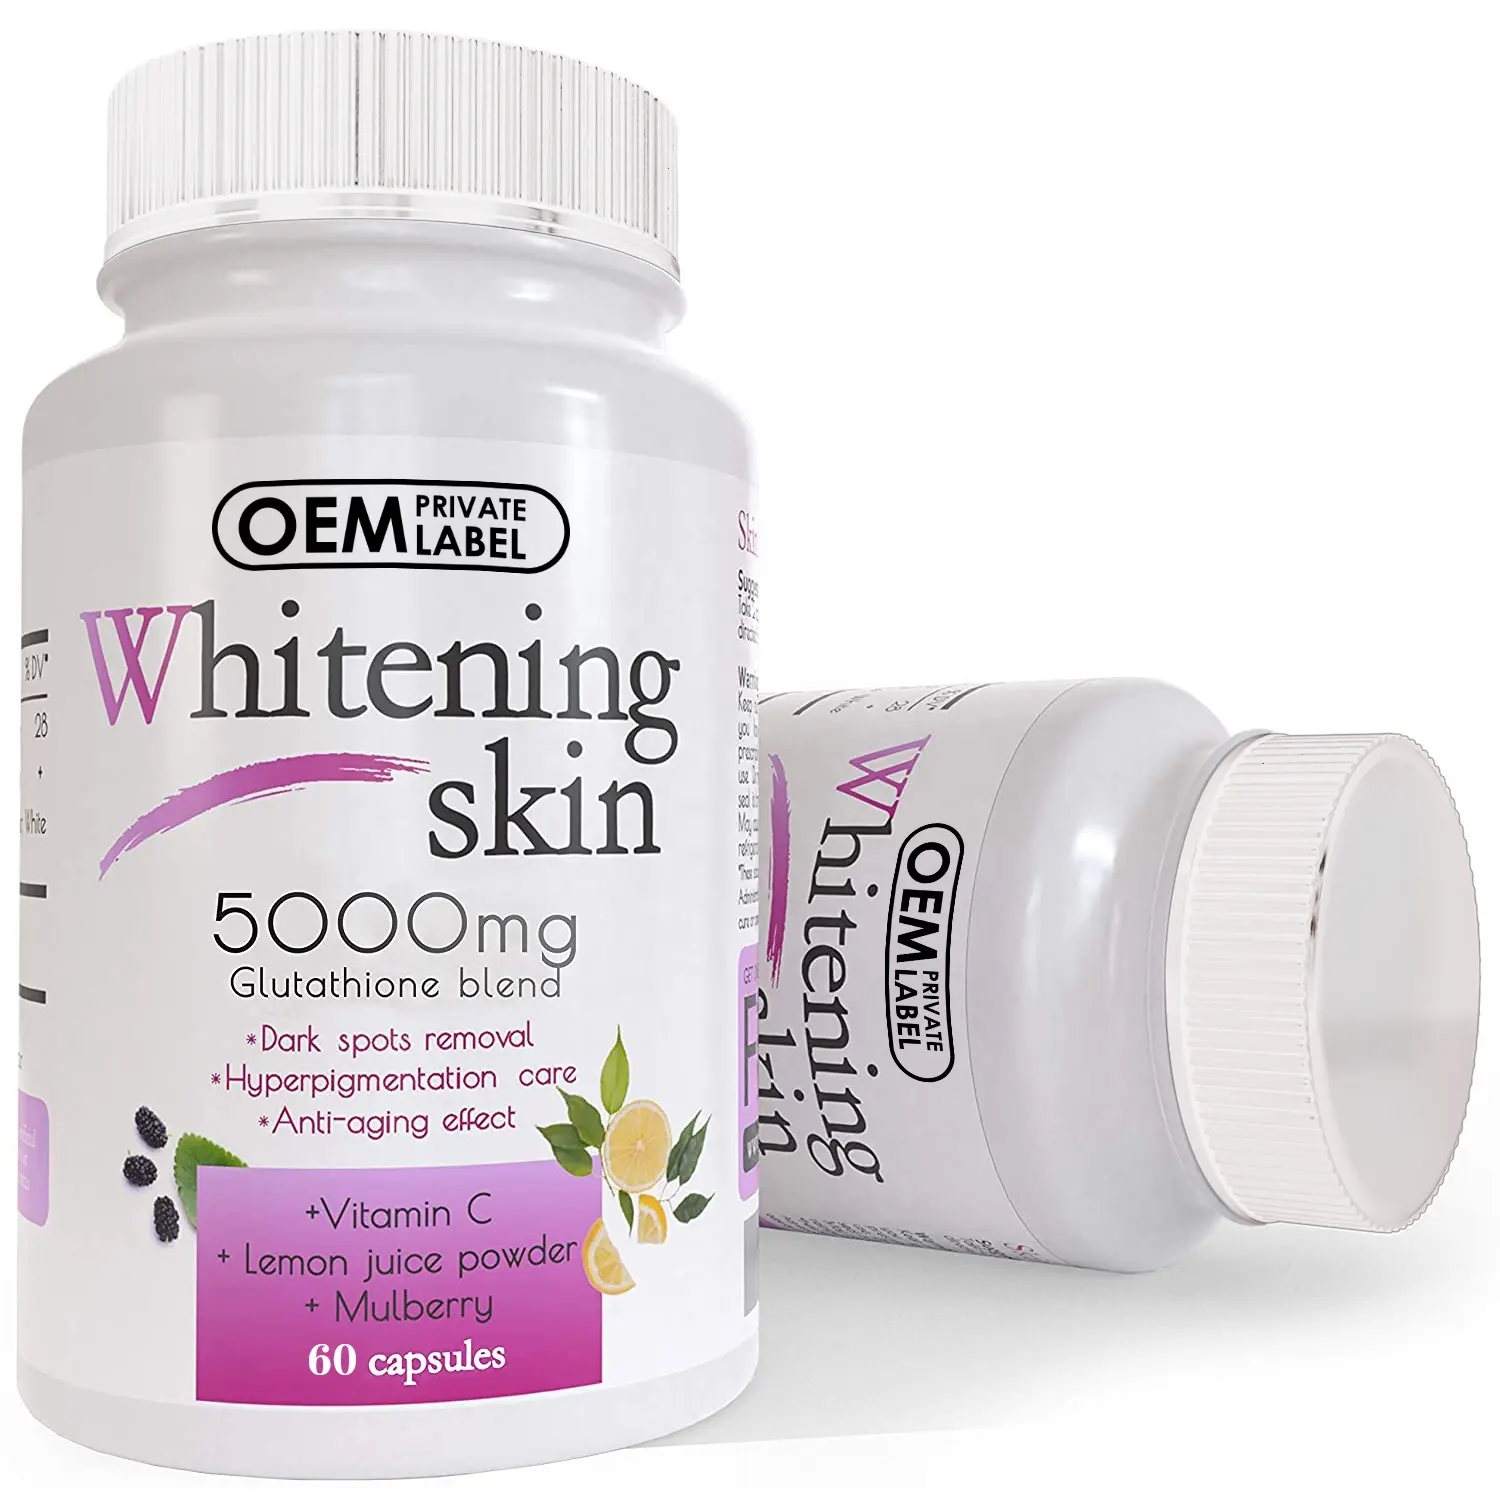 הלבנה גלולות עם ויטמין C כתם כהה מסיר צלקת אקנה 90000 mg העור גלולות הלבנה עם אנטי אייג 'ינג & נוגדי חמצון